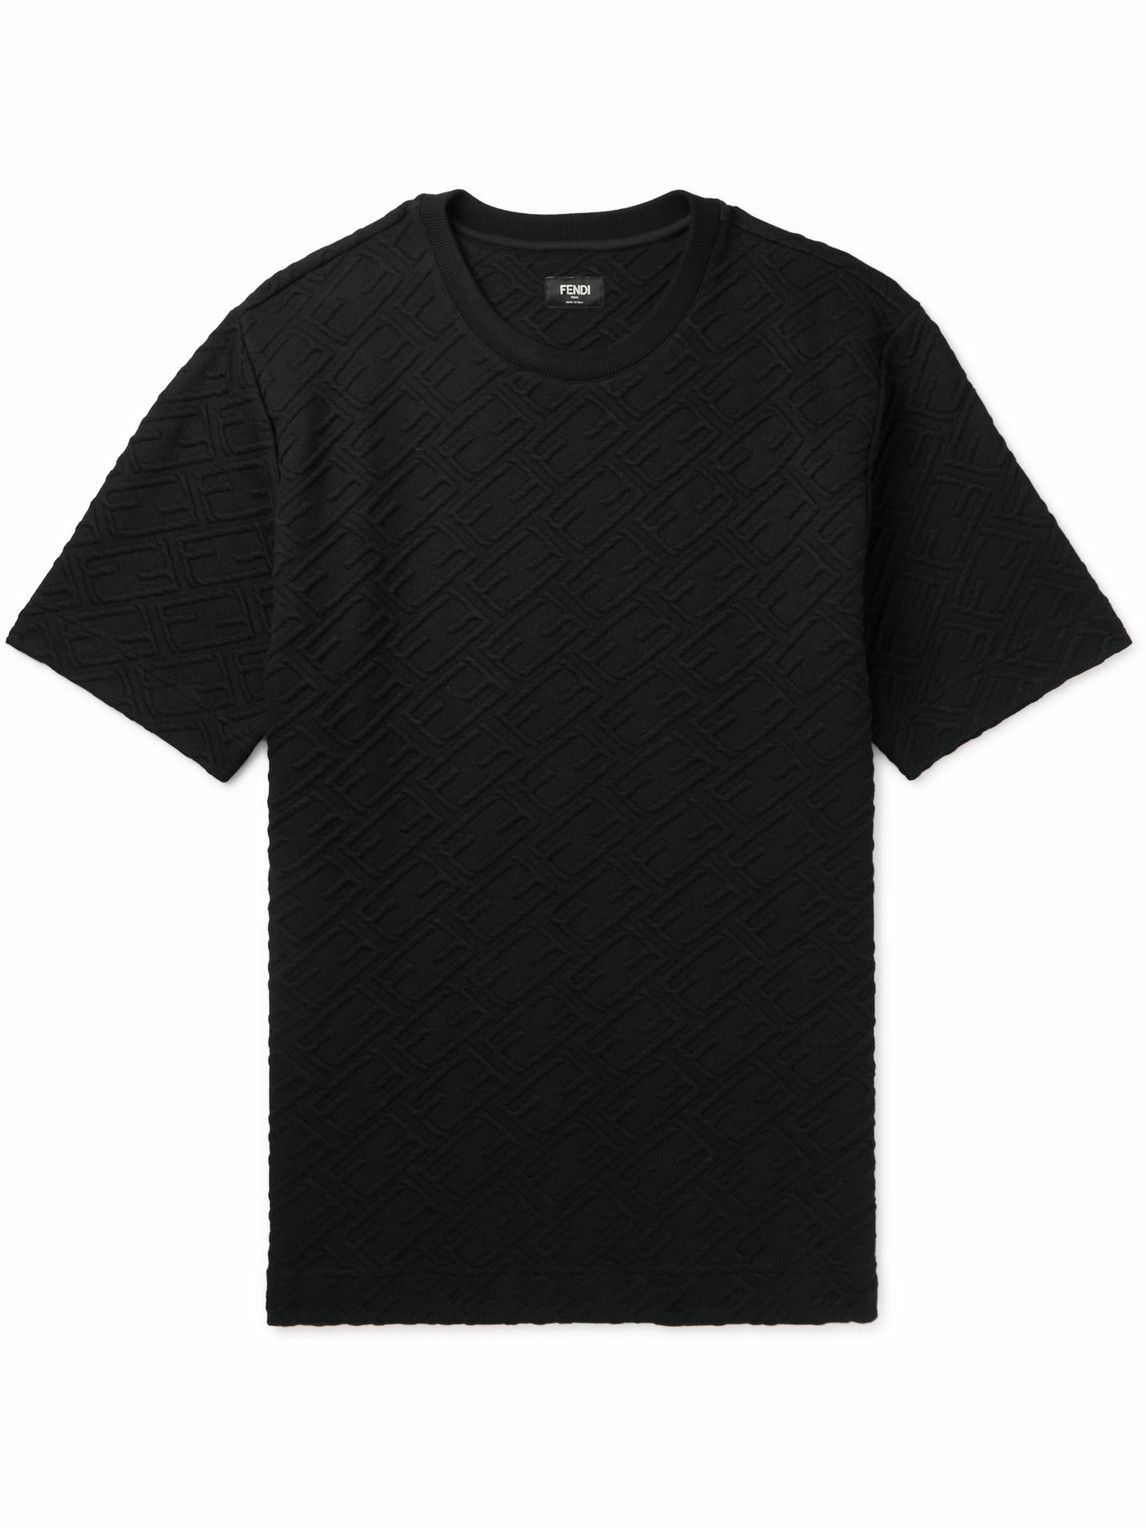 Photo: Fendi - Logo-Jacquard Jersey T-Shirt - Black